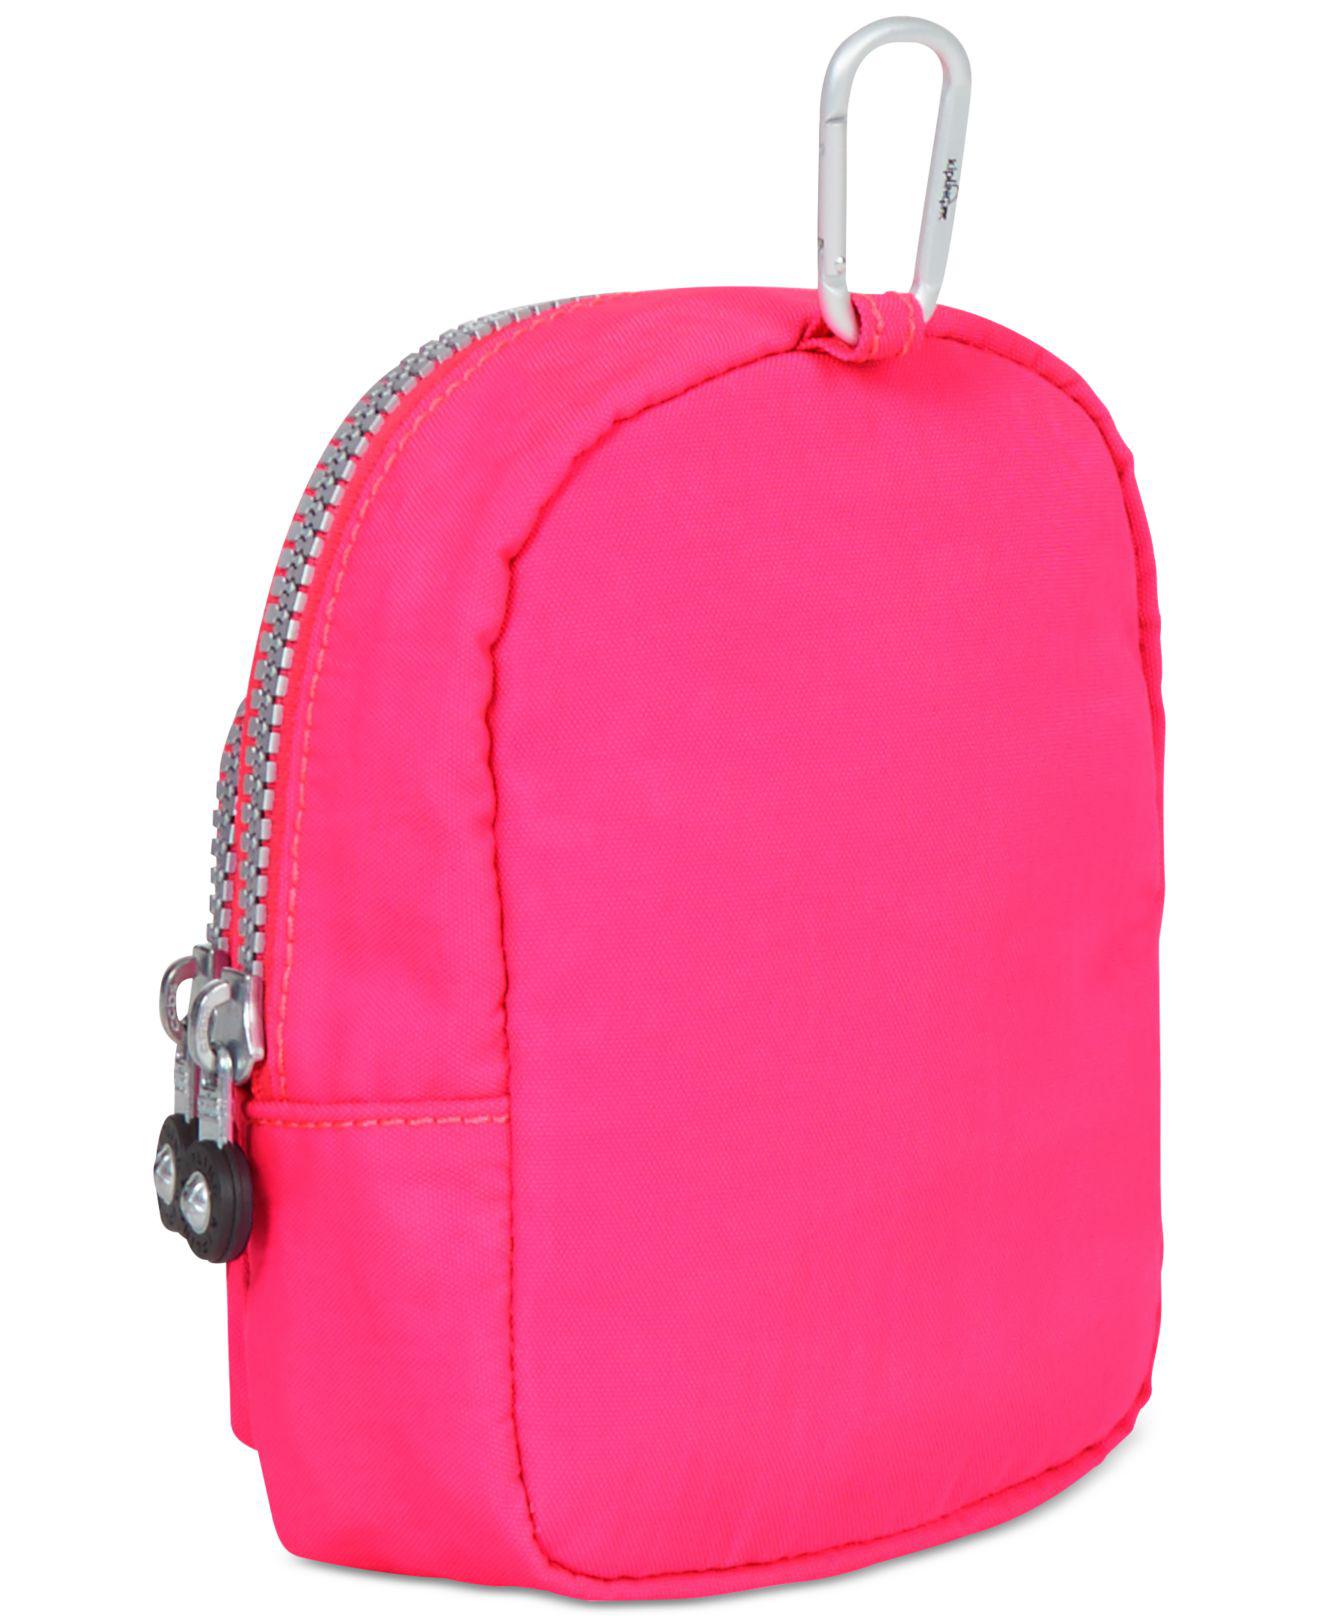 Kipling Kami Key Chain Mini Bag in Pink - Lyst